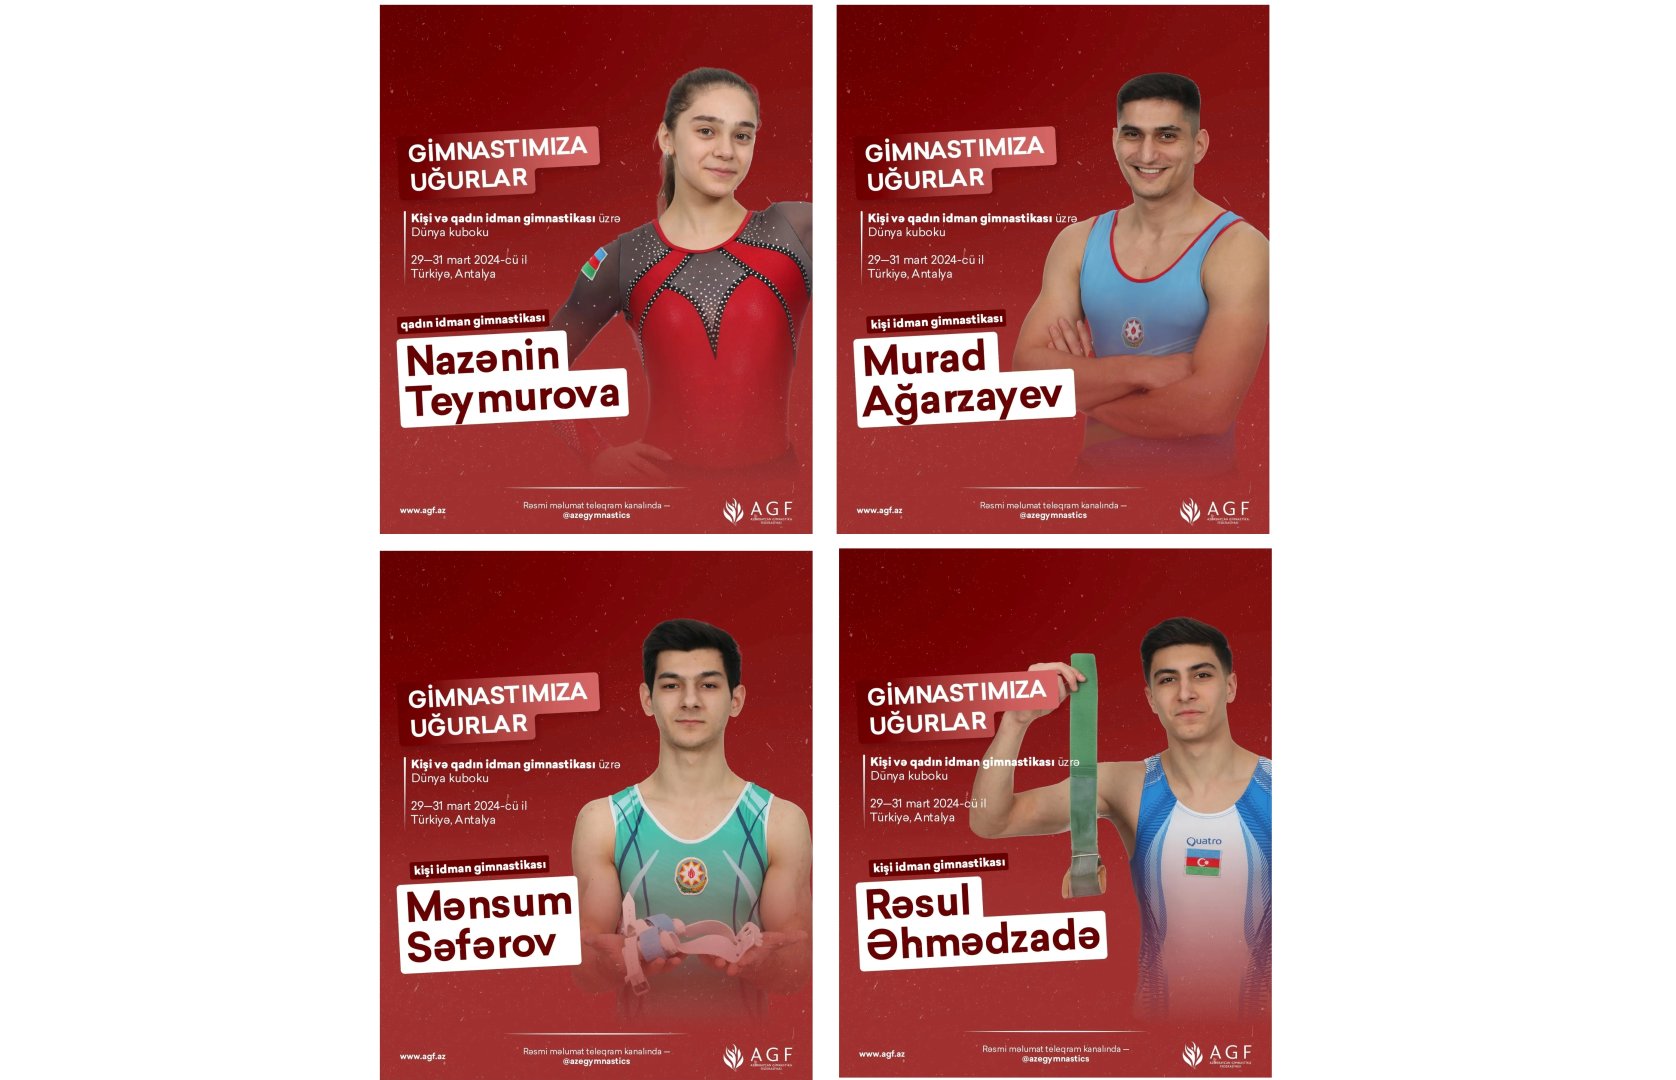 Азербайджанские гимнасты участвуют в Кубке мира серии Challenge в городе Анталья (ФОТО)